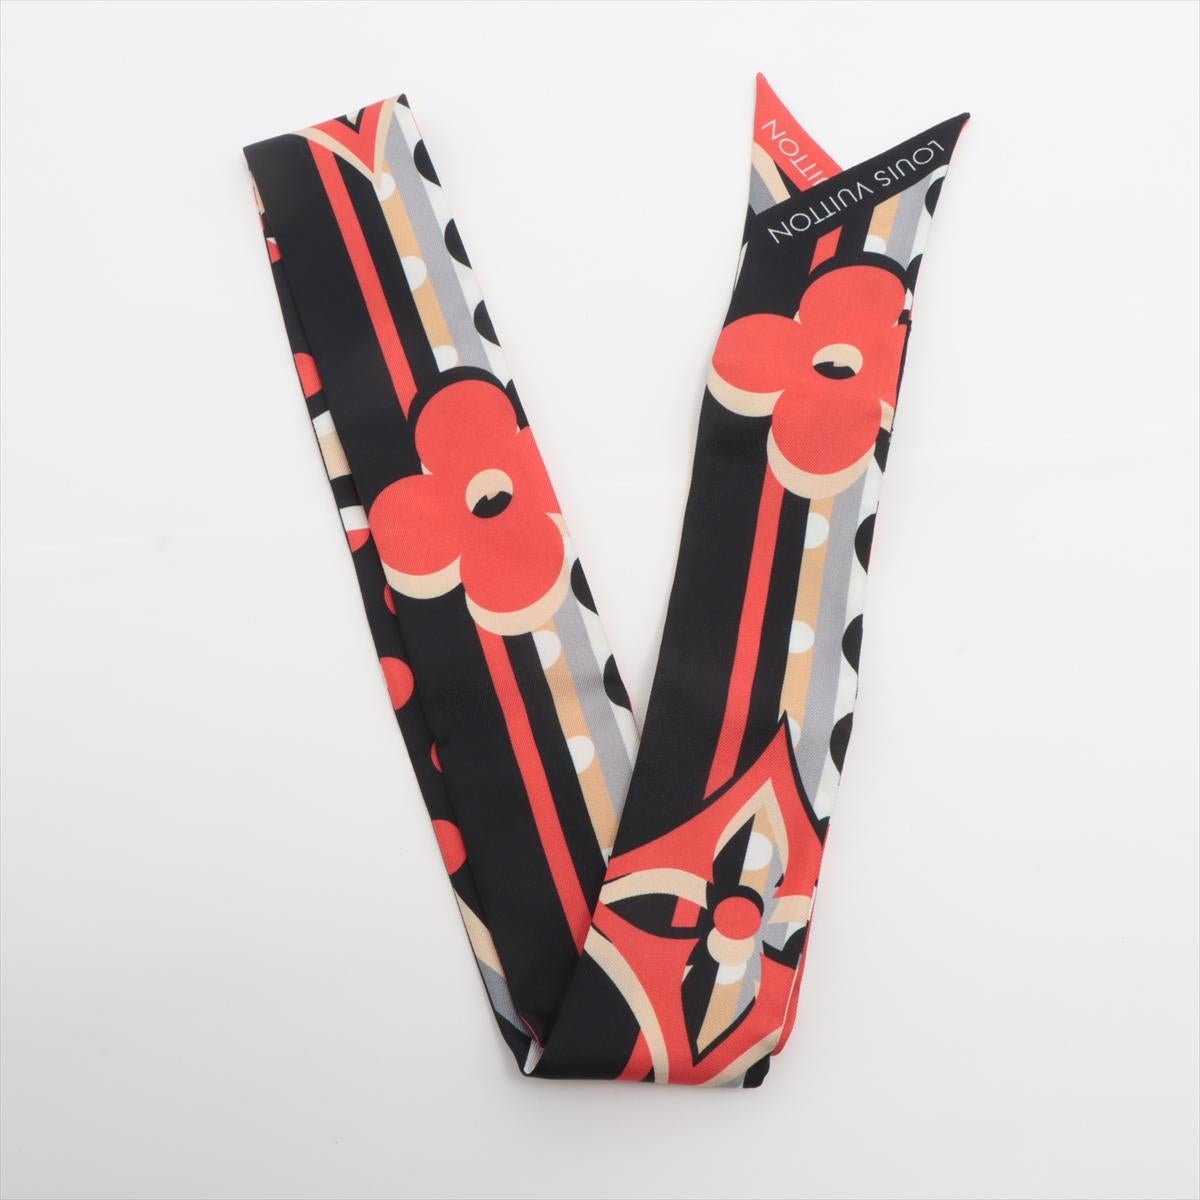 Le bandeau BB Pop Monogram de Louis Vuitton en rouge est un accessoire vibrant et élégant qui ajoute une touche de couleur à votre ensemble. Le bandeau présente le motif Monogram emblématique dans un design ludique et contemporain. La couleur rouge